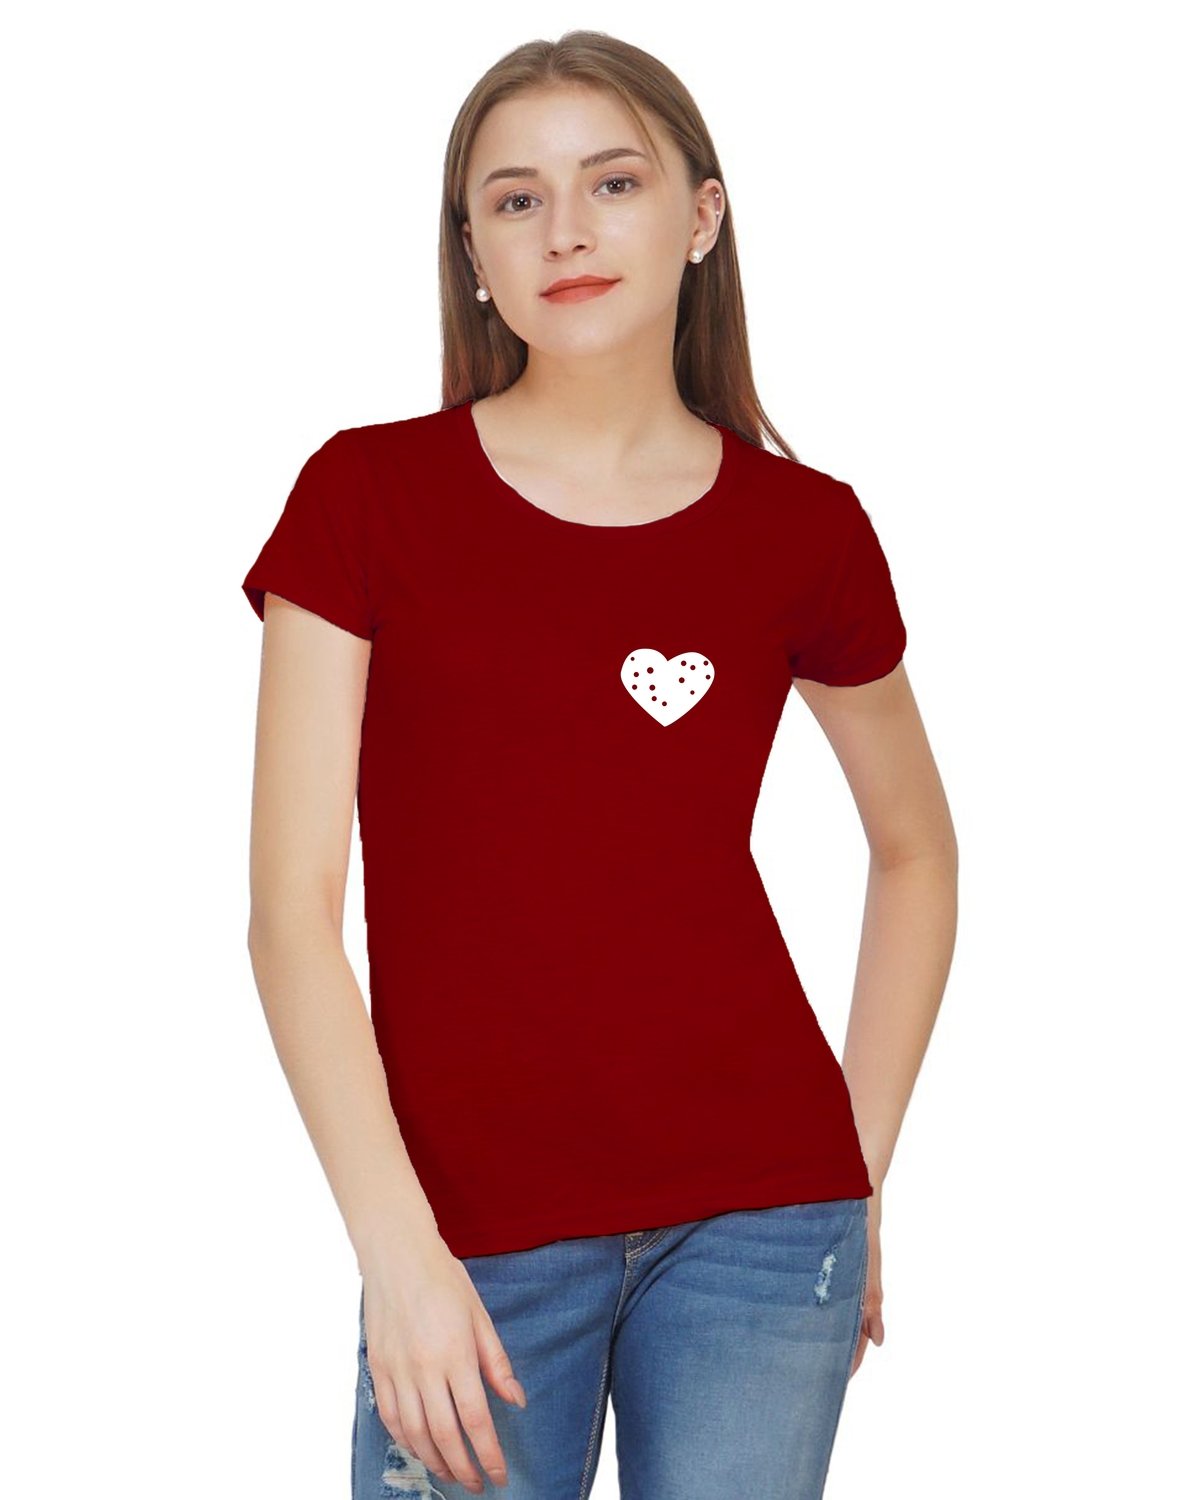 Cute Little Heart Printed T-shirt for Women